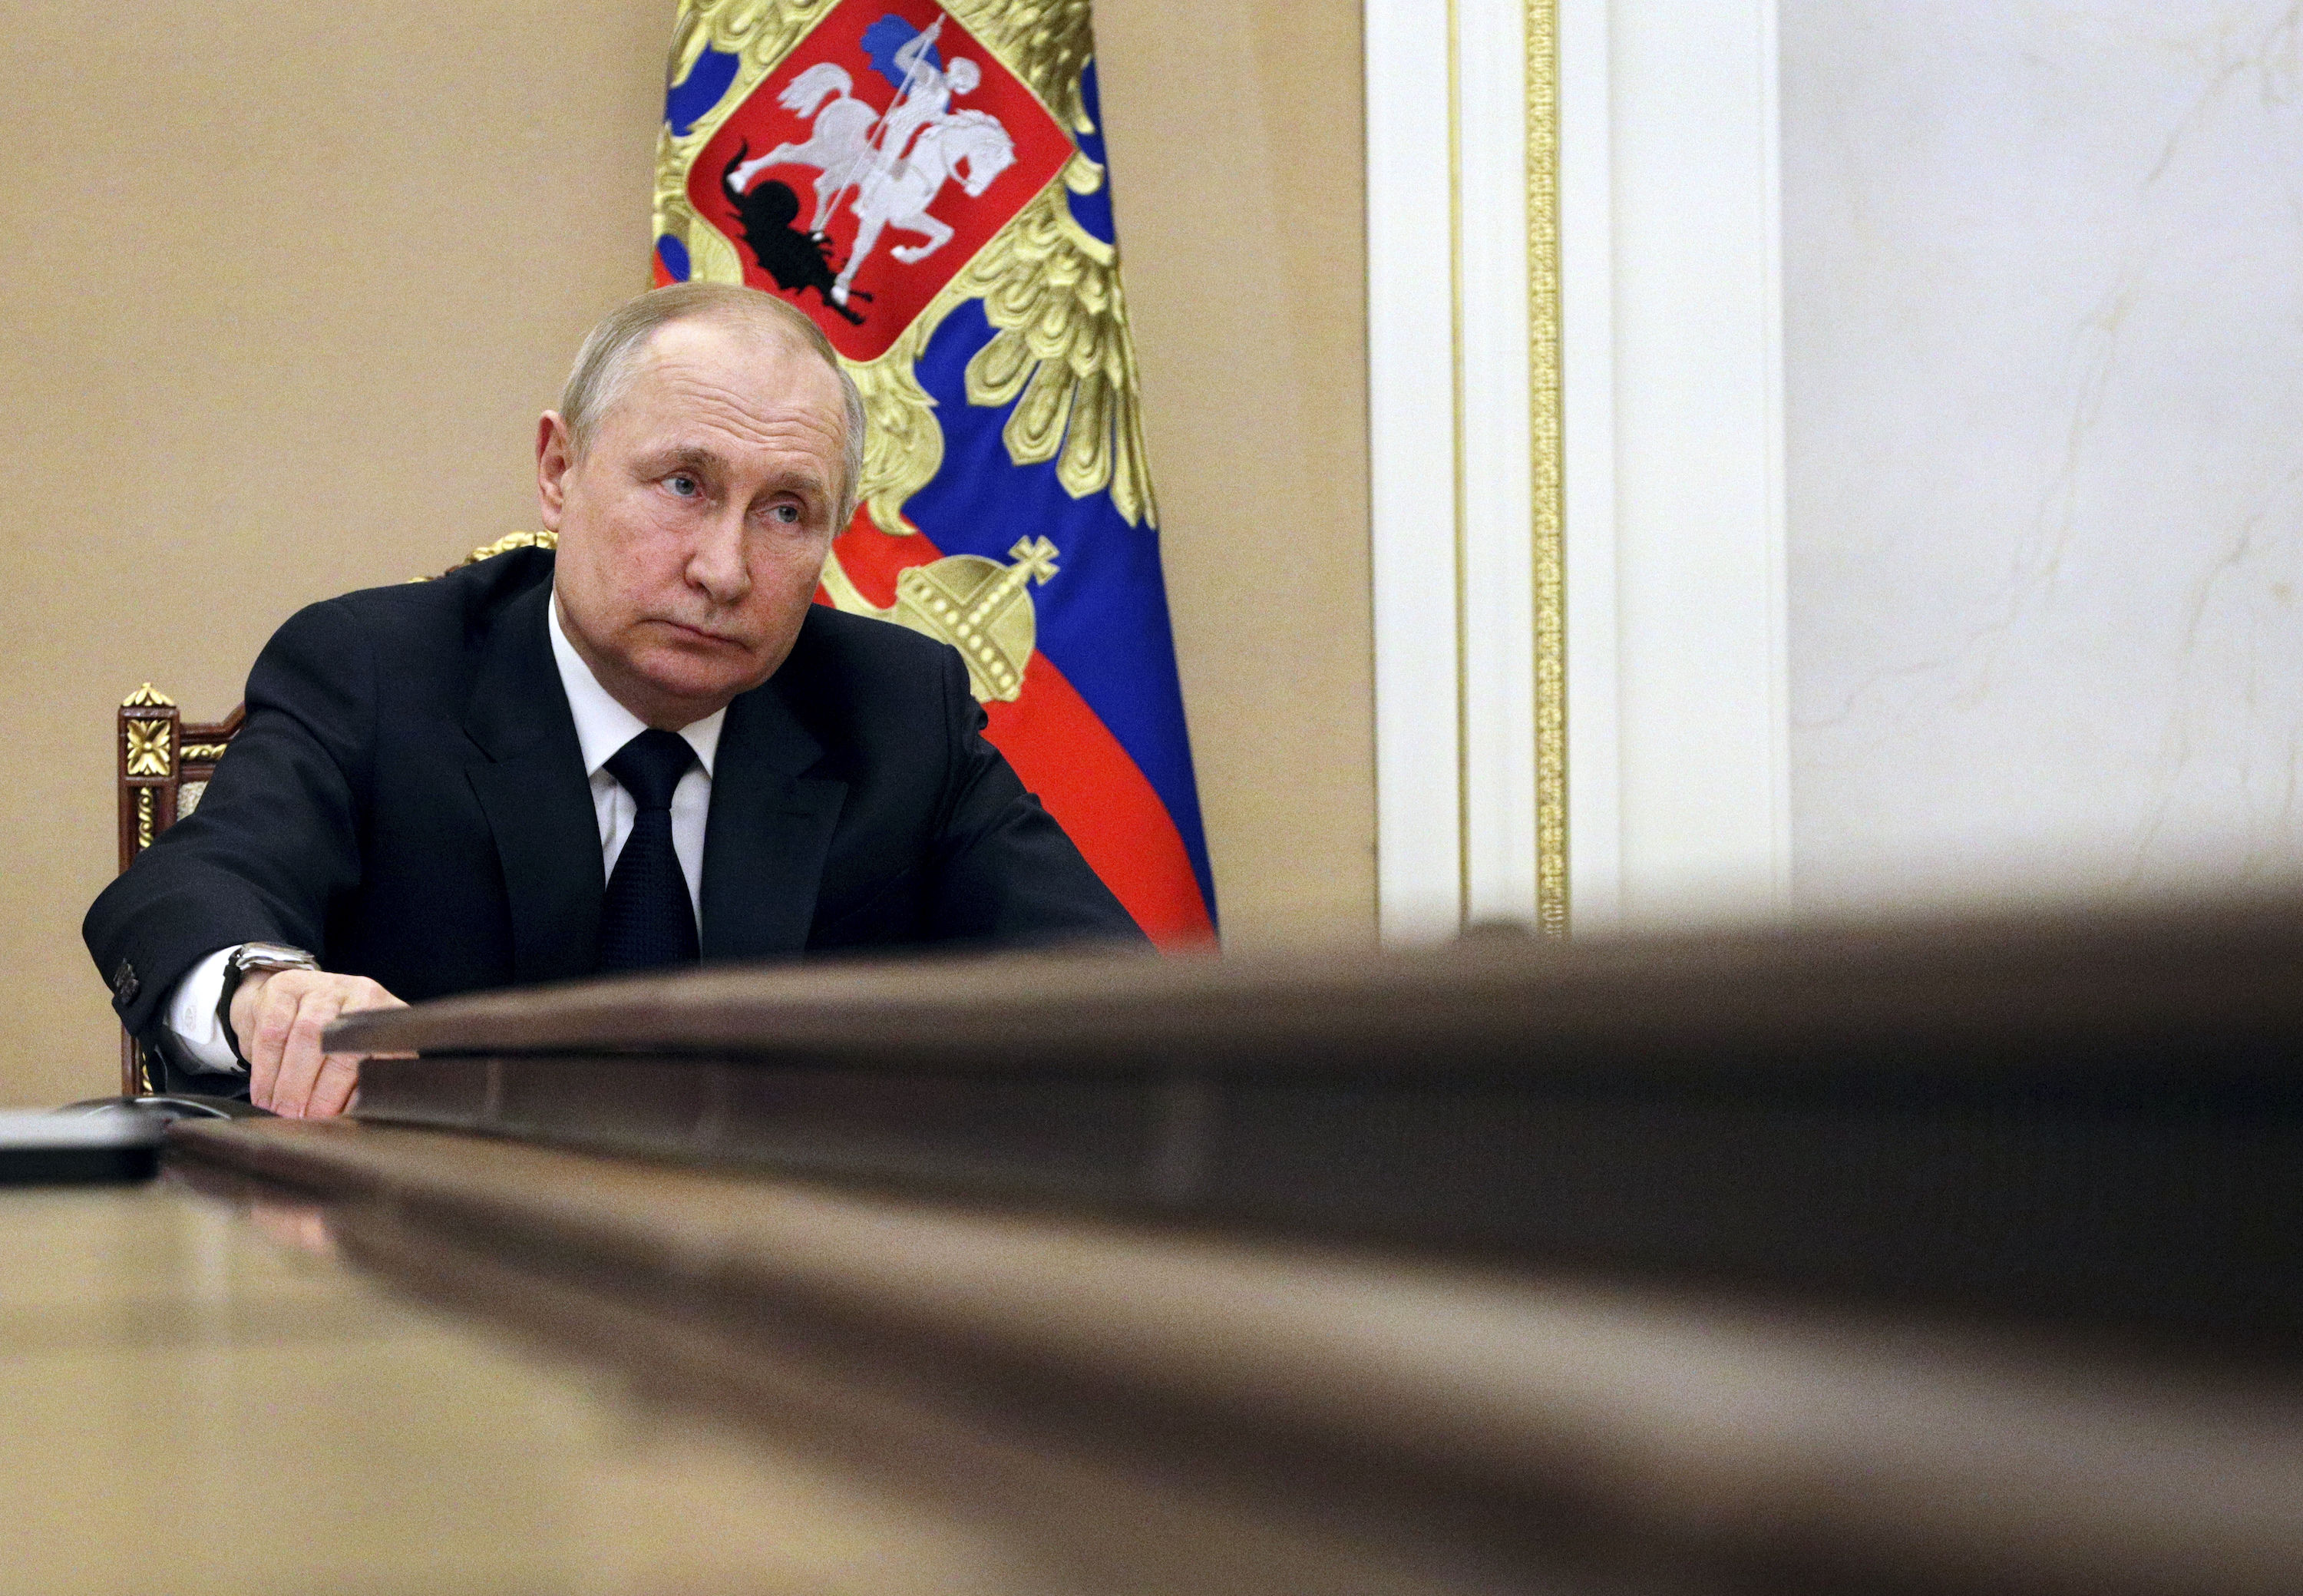 بخت آزمایی تزار در کرملین / پوتین برای انتخابات روسیه ثبت نام کرد!